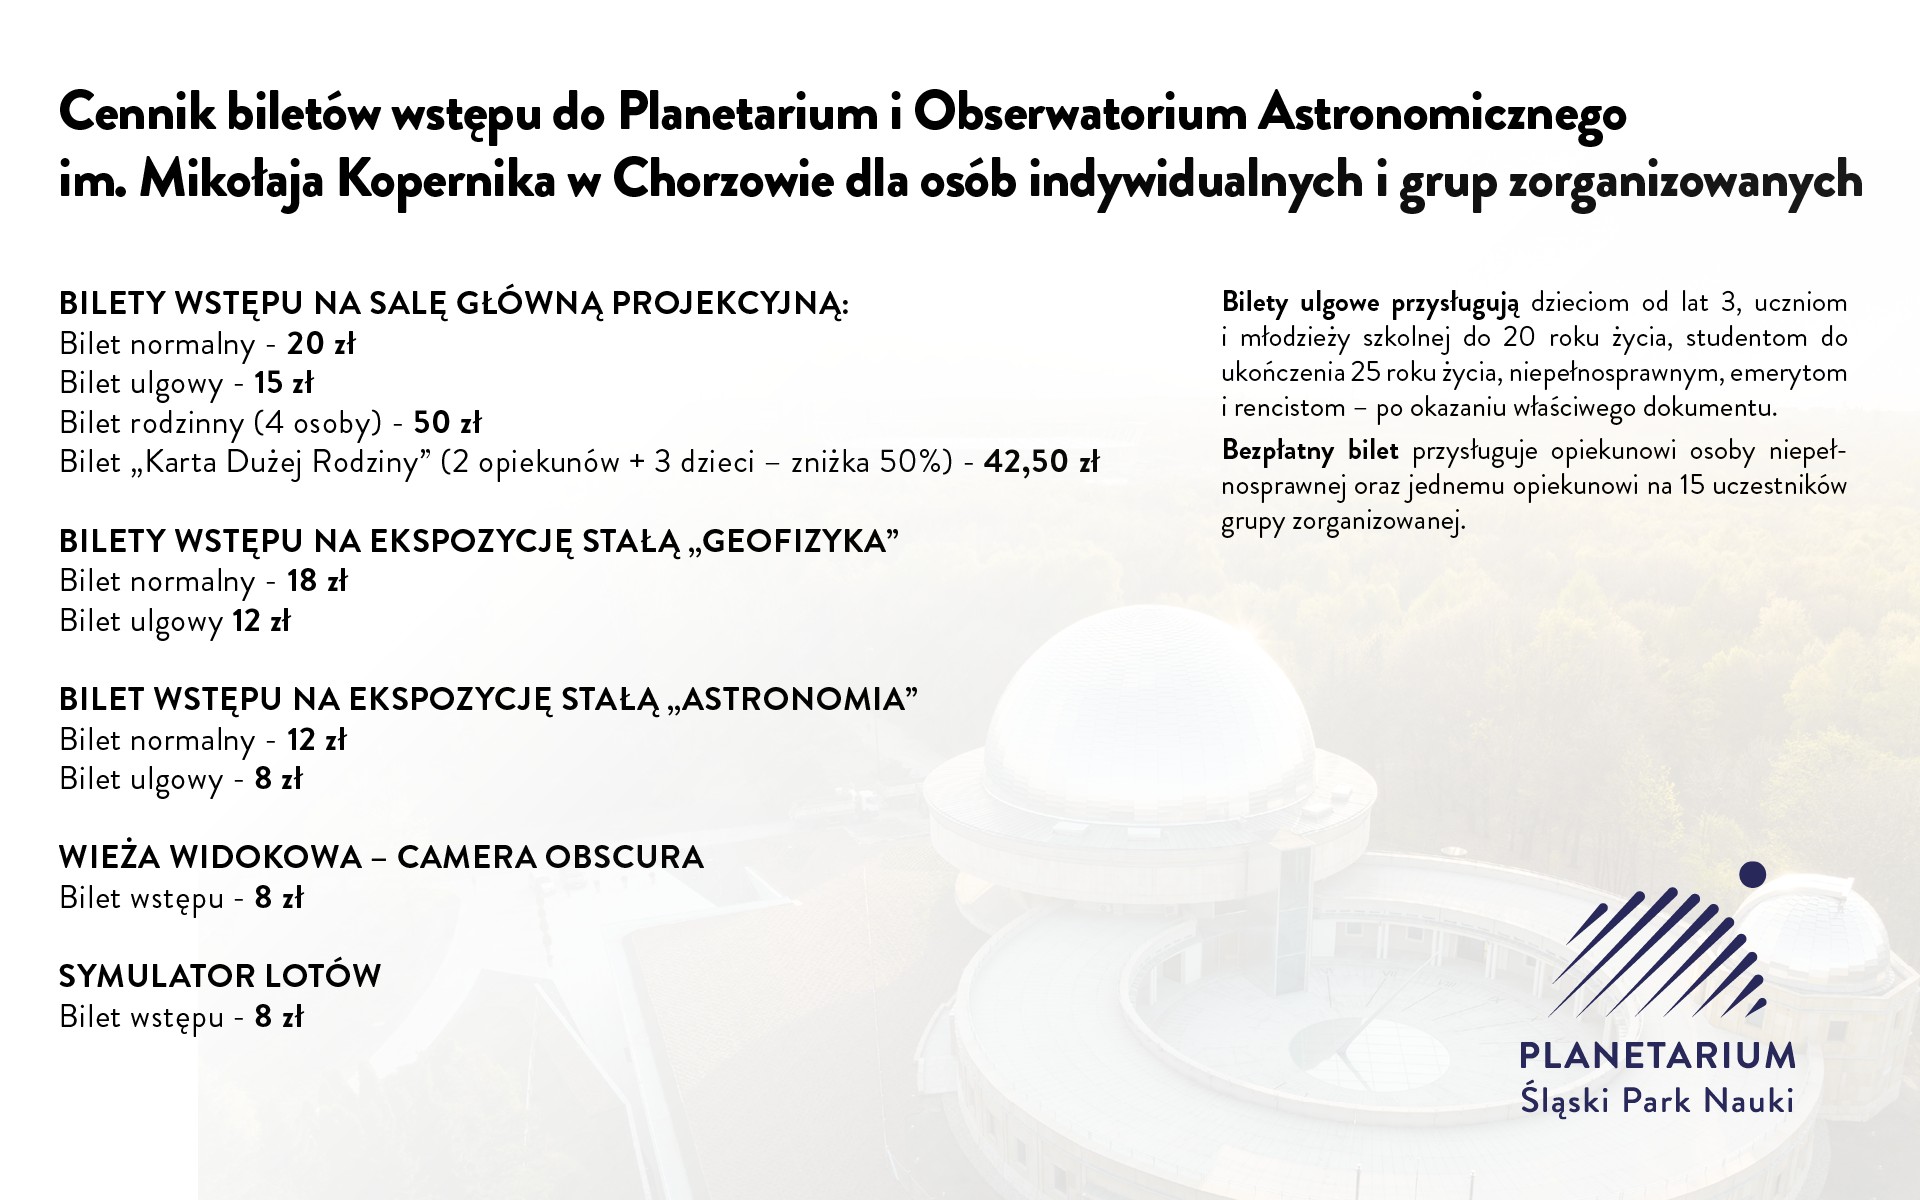 Cennik biletów do Planetarium - Śląskiego Parku Nauki w Chorzowie